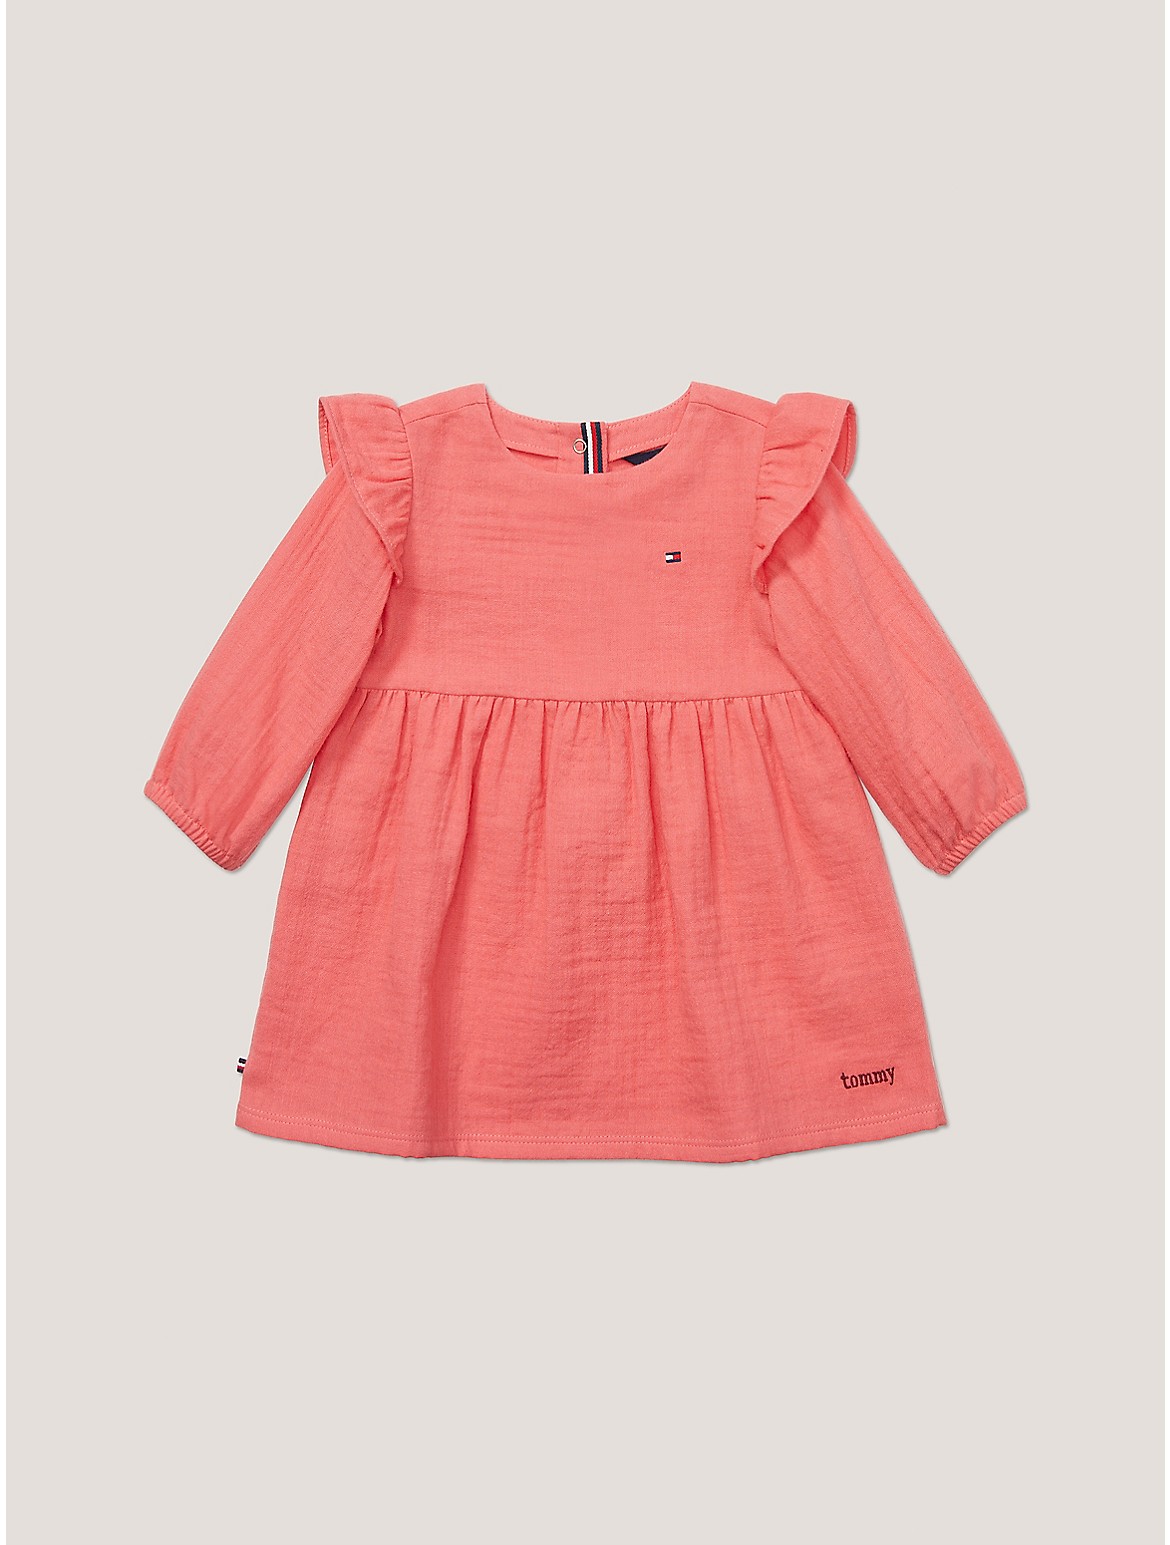 Tommy Hilfiger Girls' Babies' Muslin Frill Dress - Pink - 12M